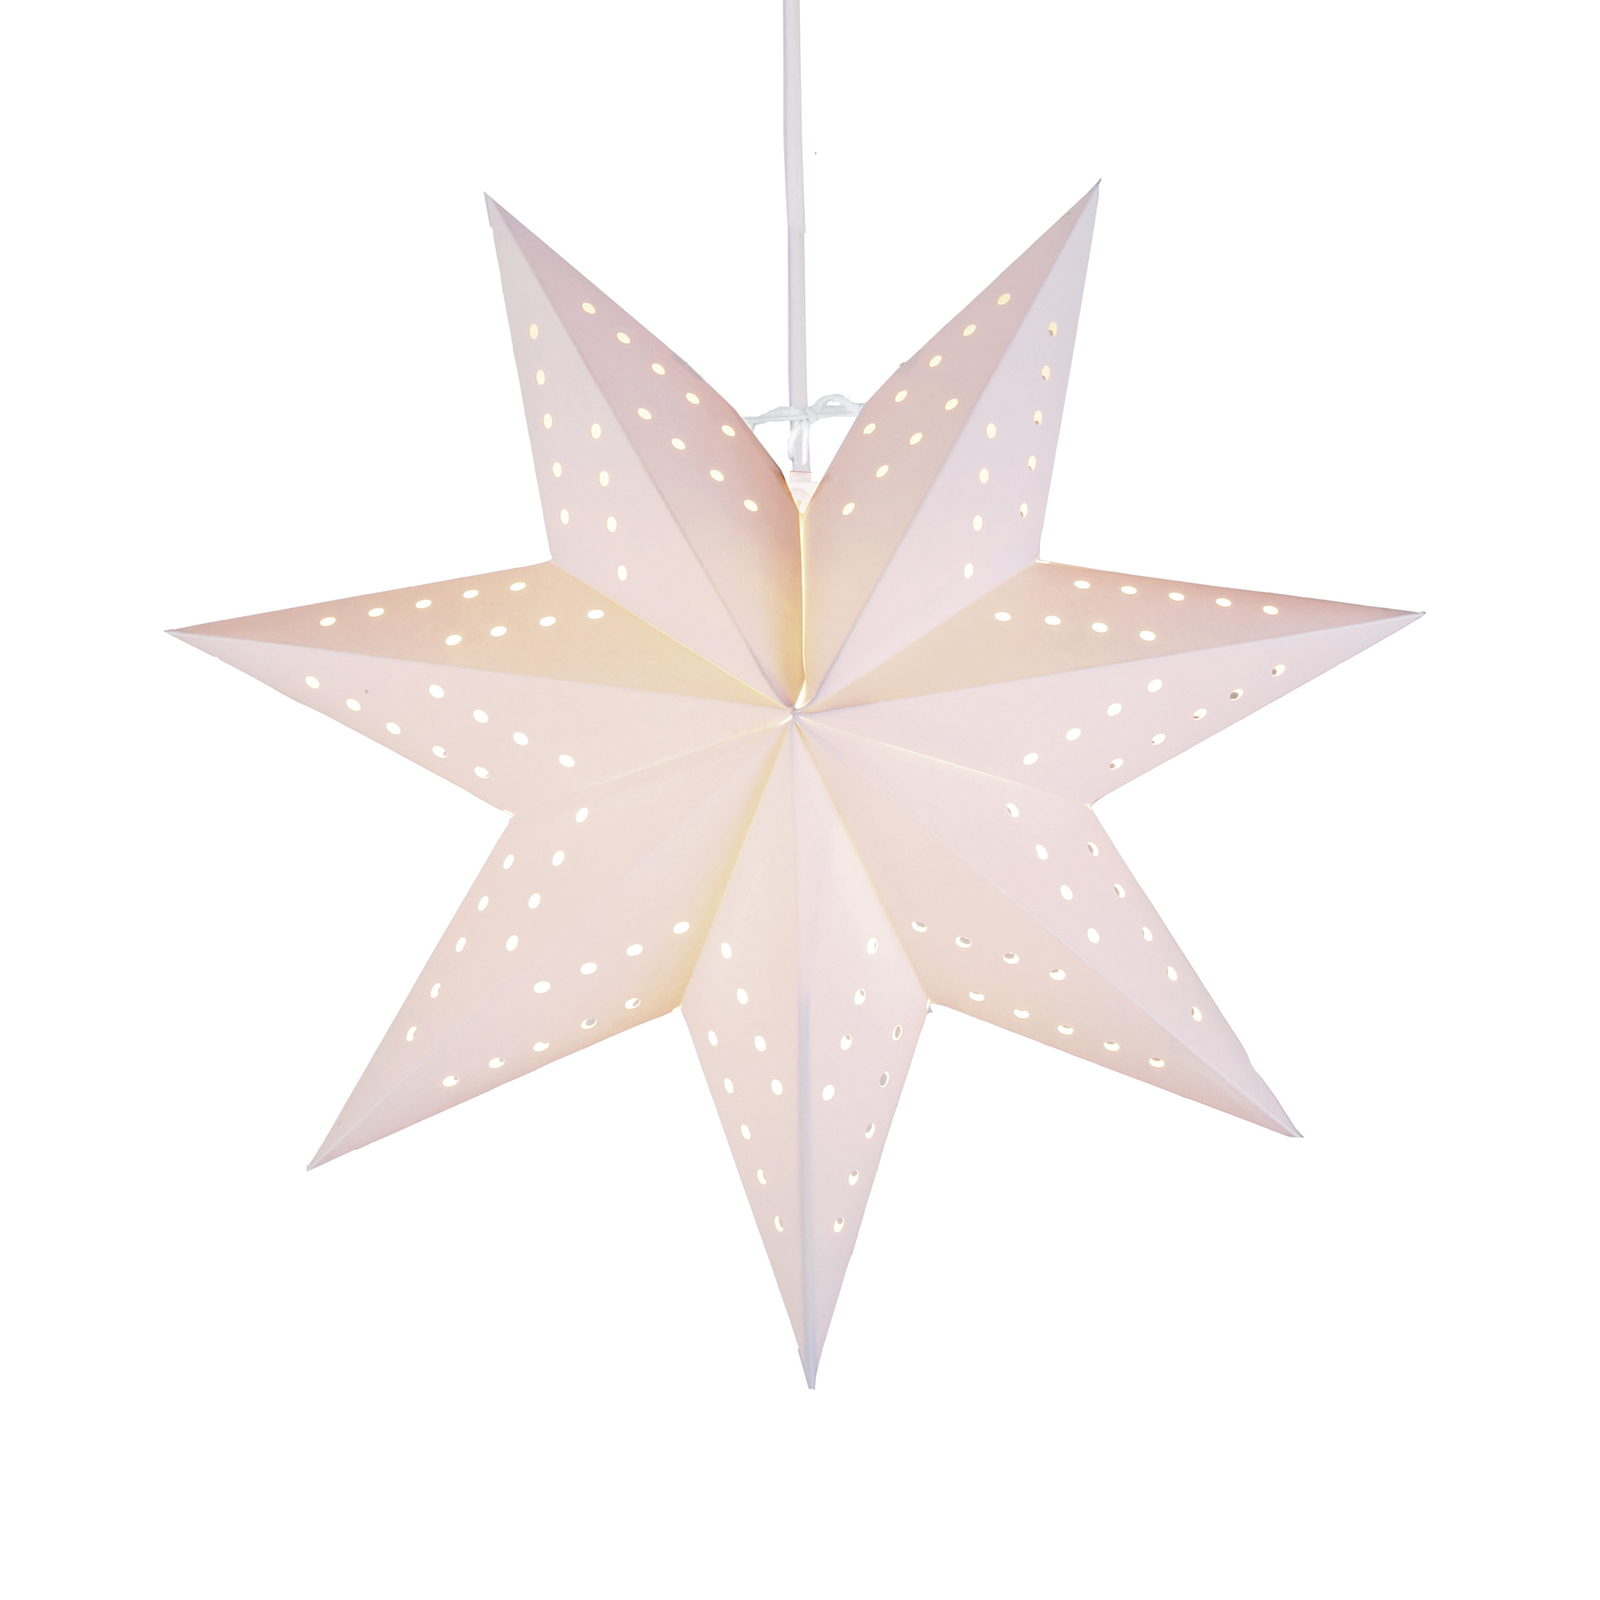 Papírová hvězda Bobo, 7cípá v bílé barvě Ø 34 cm